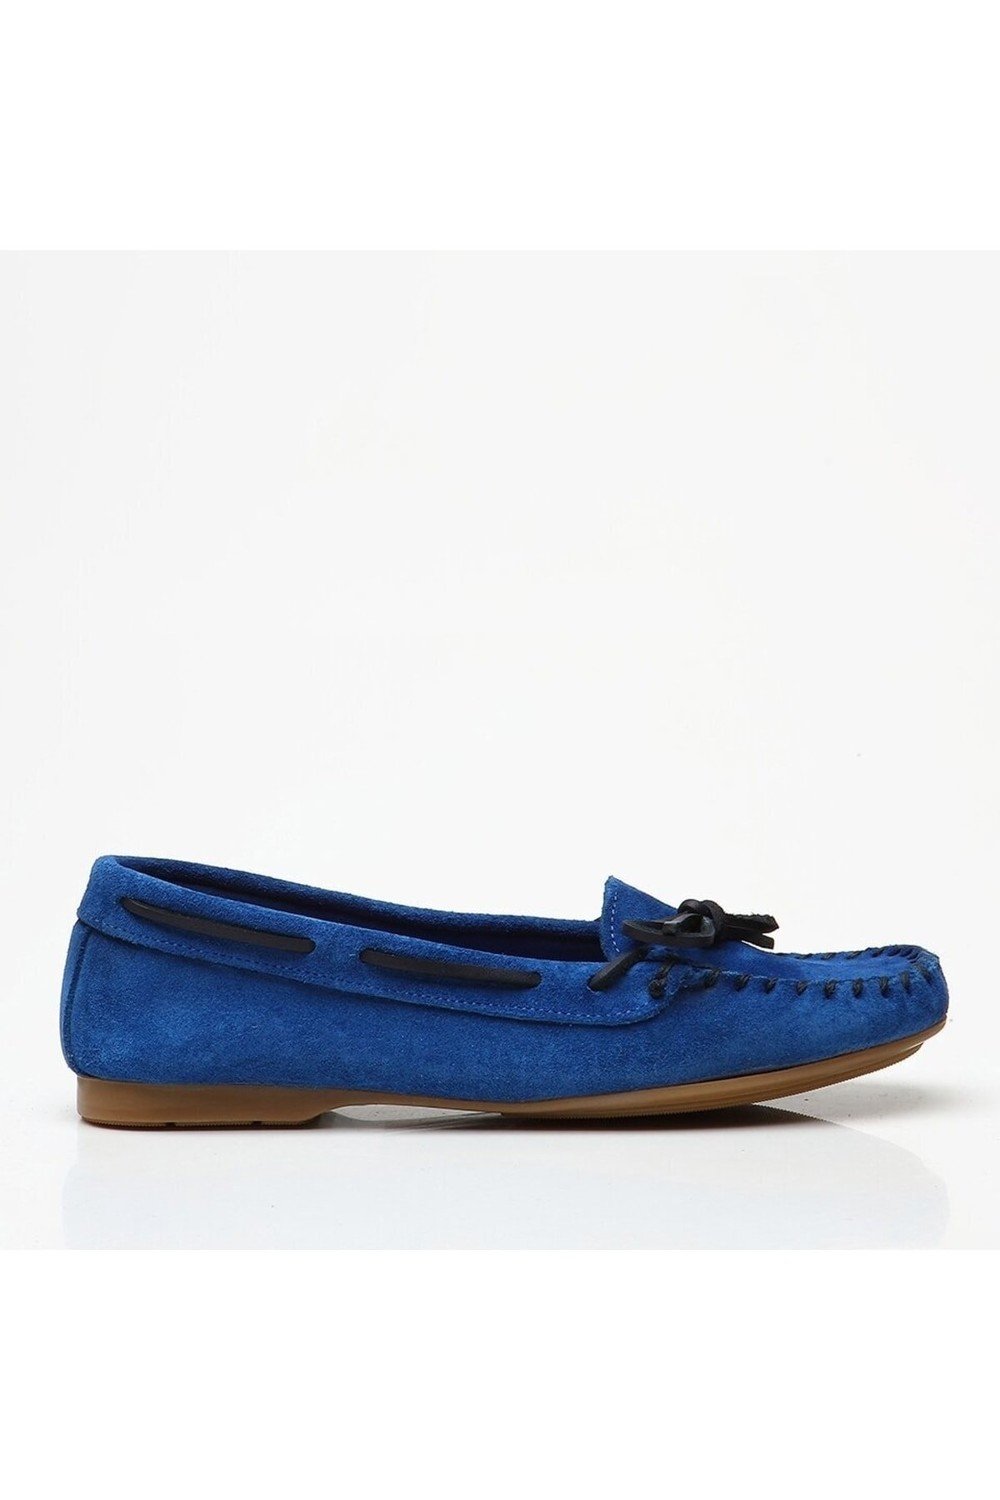 Hotiç Loafer Shoes - Blue - Flat